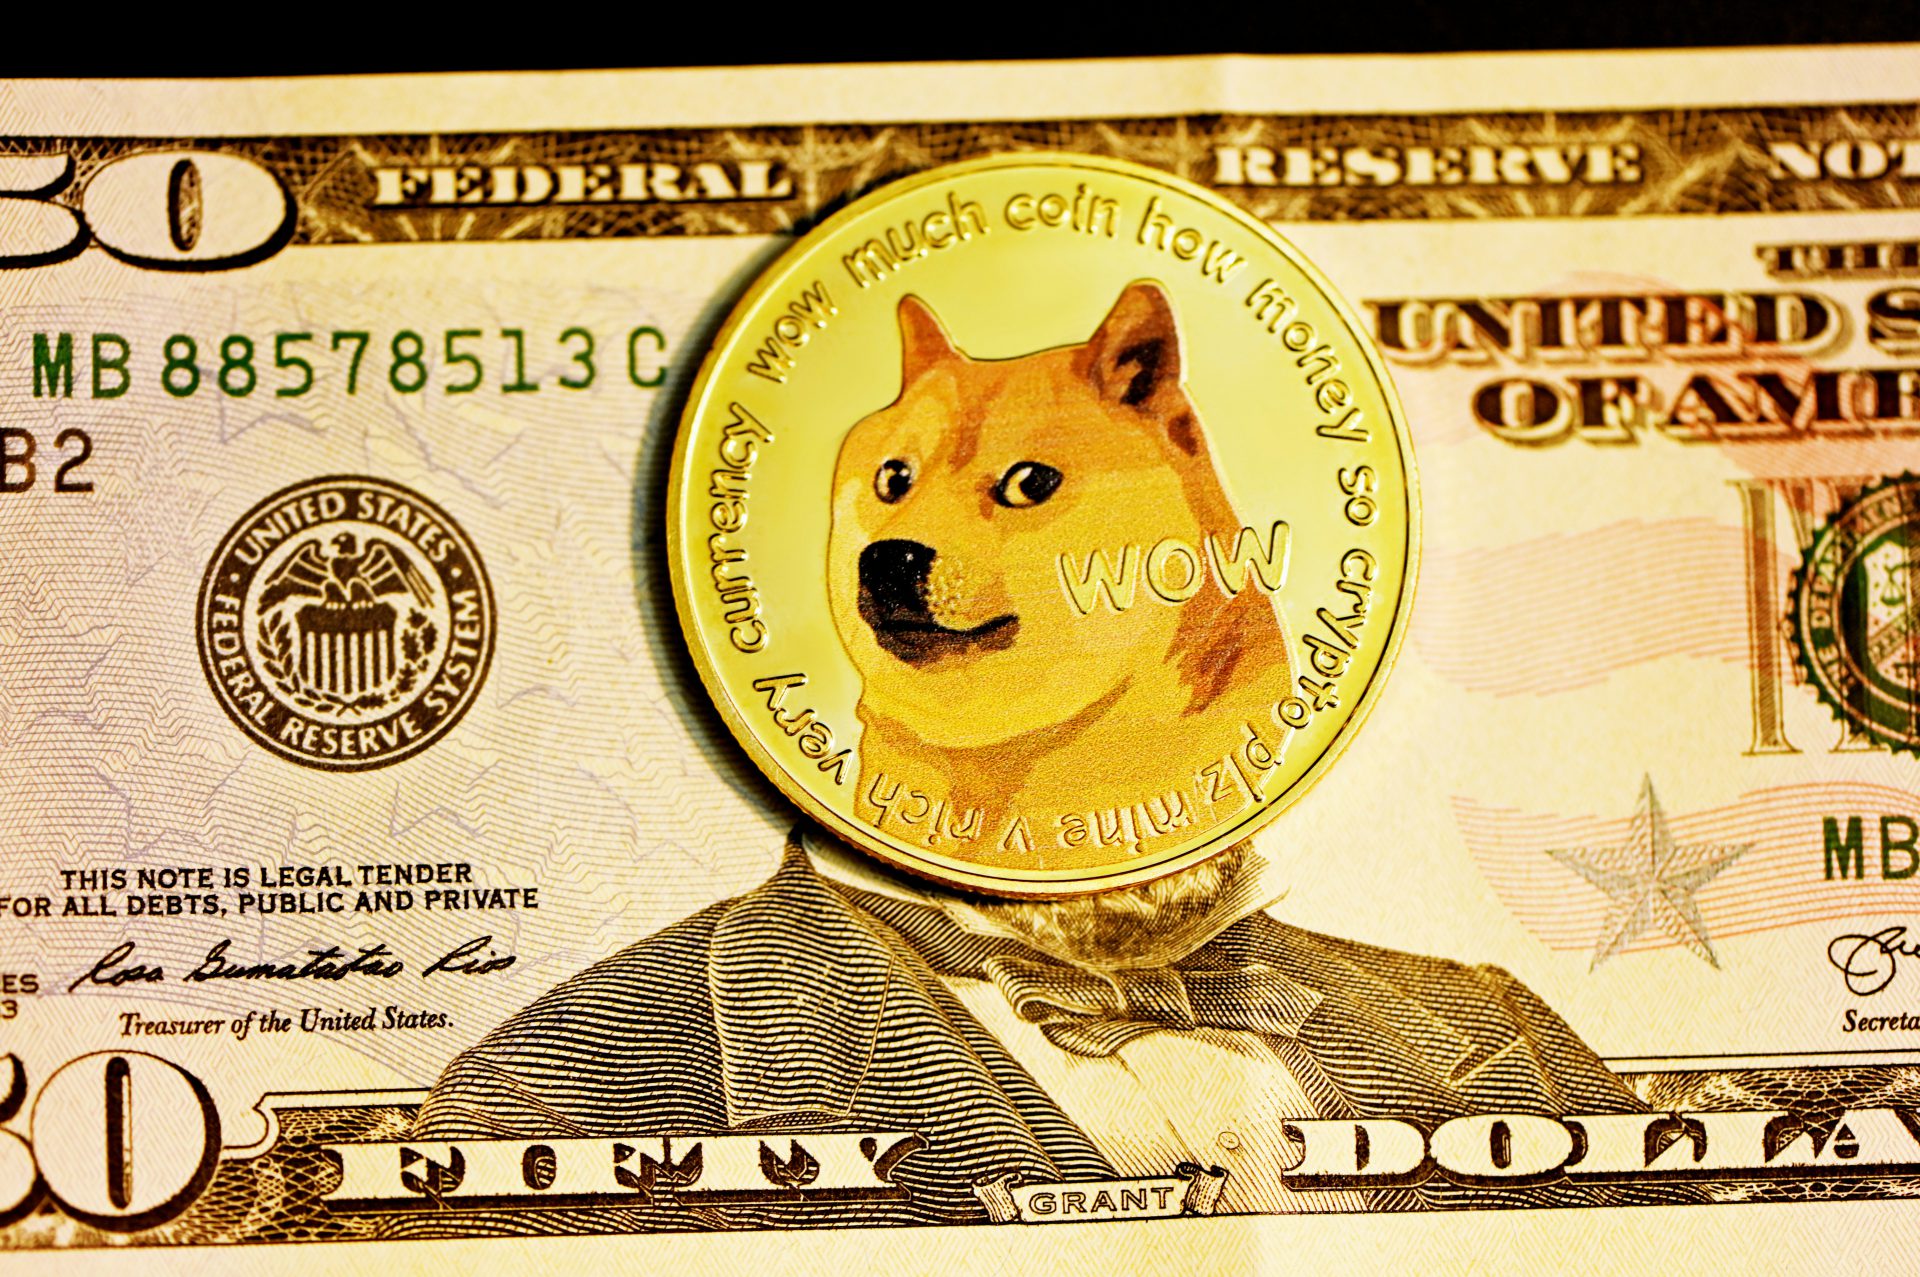 دوج کوین [DOGE] پیش بینی شده برای رسیدن به $1: اینجا چه زمانی است